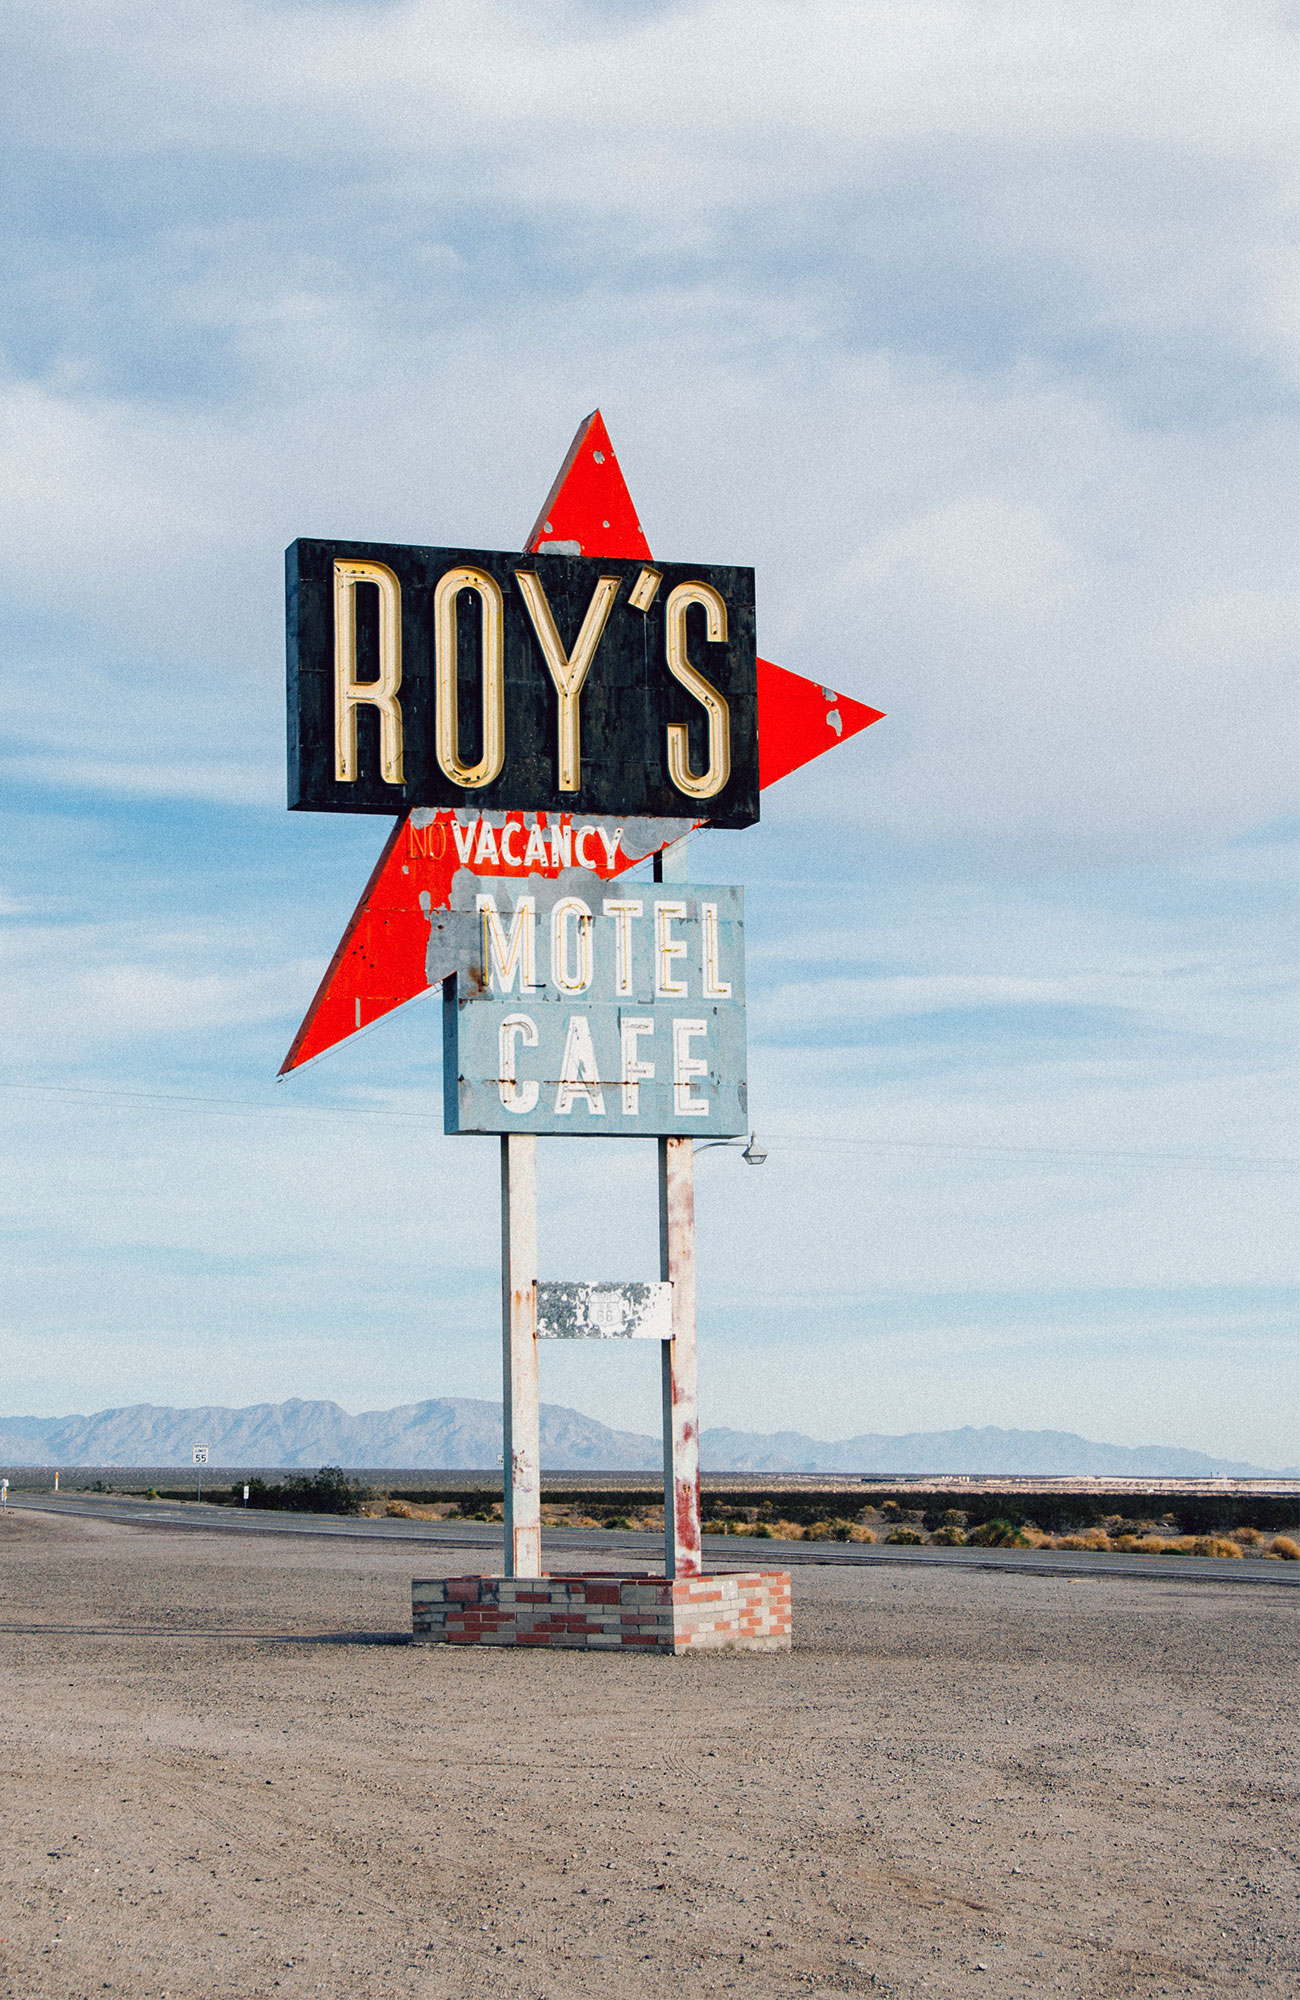 Besök Roy’s Motel and Café som är en populär sevärdhet längs Route 66